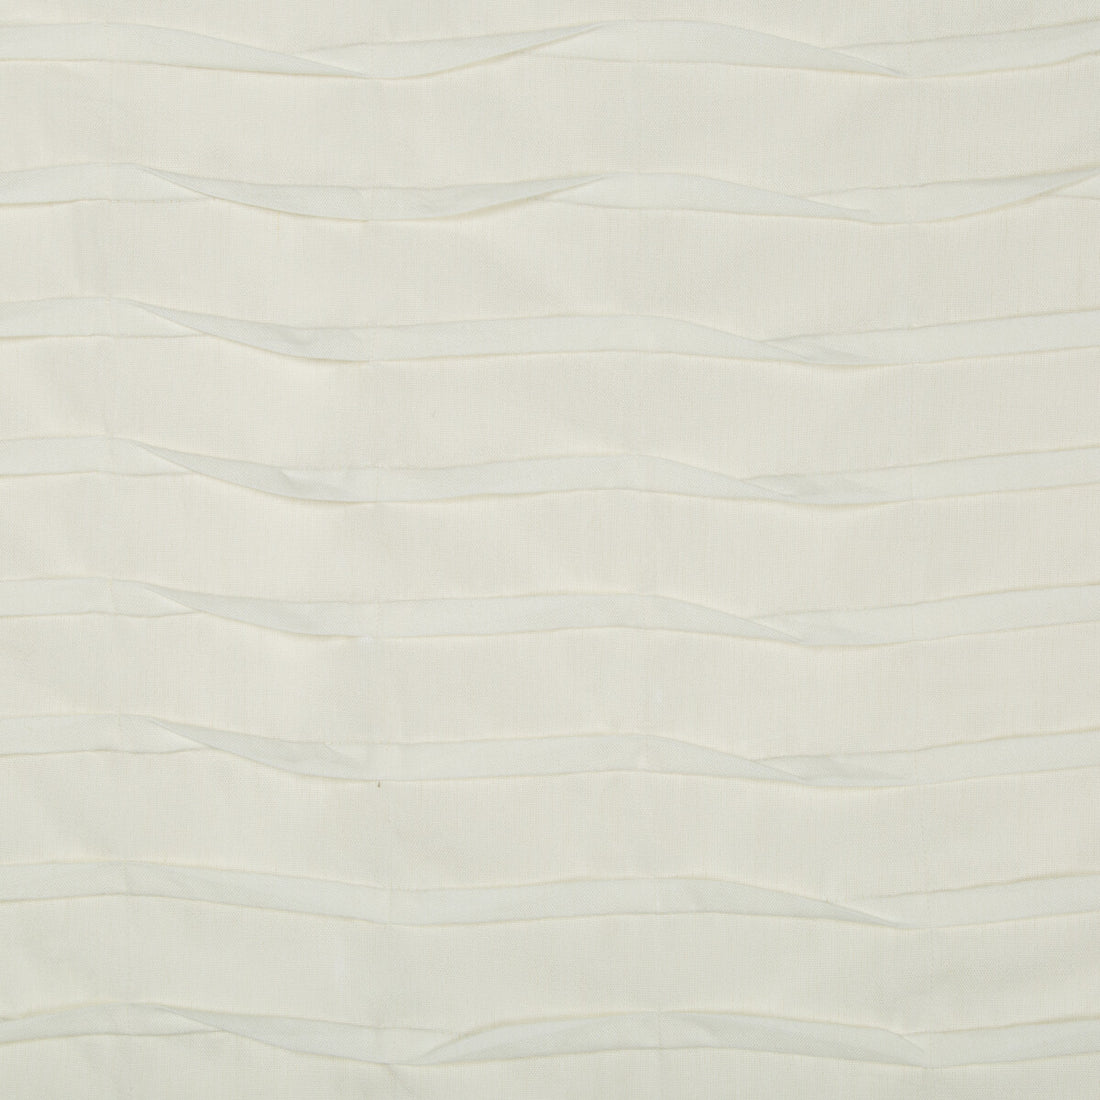 Kravet Basics fabric in 4334-1 color - pattern 4334.1.0 - by Kravet Basics